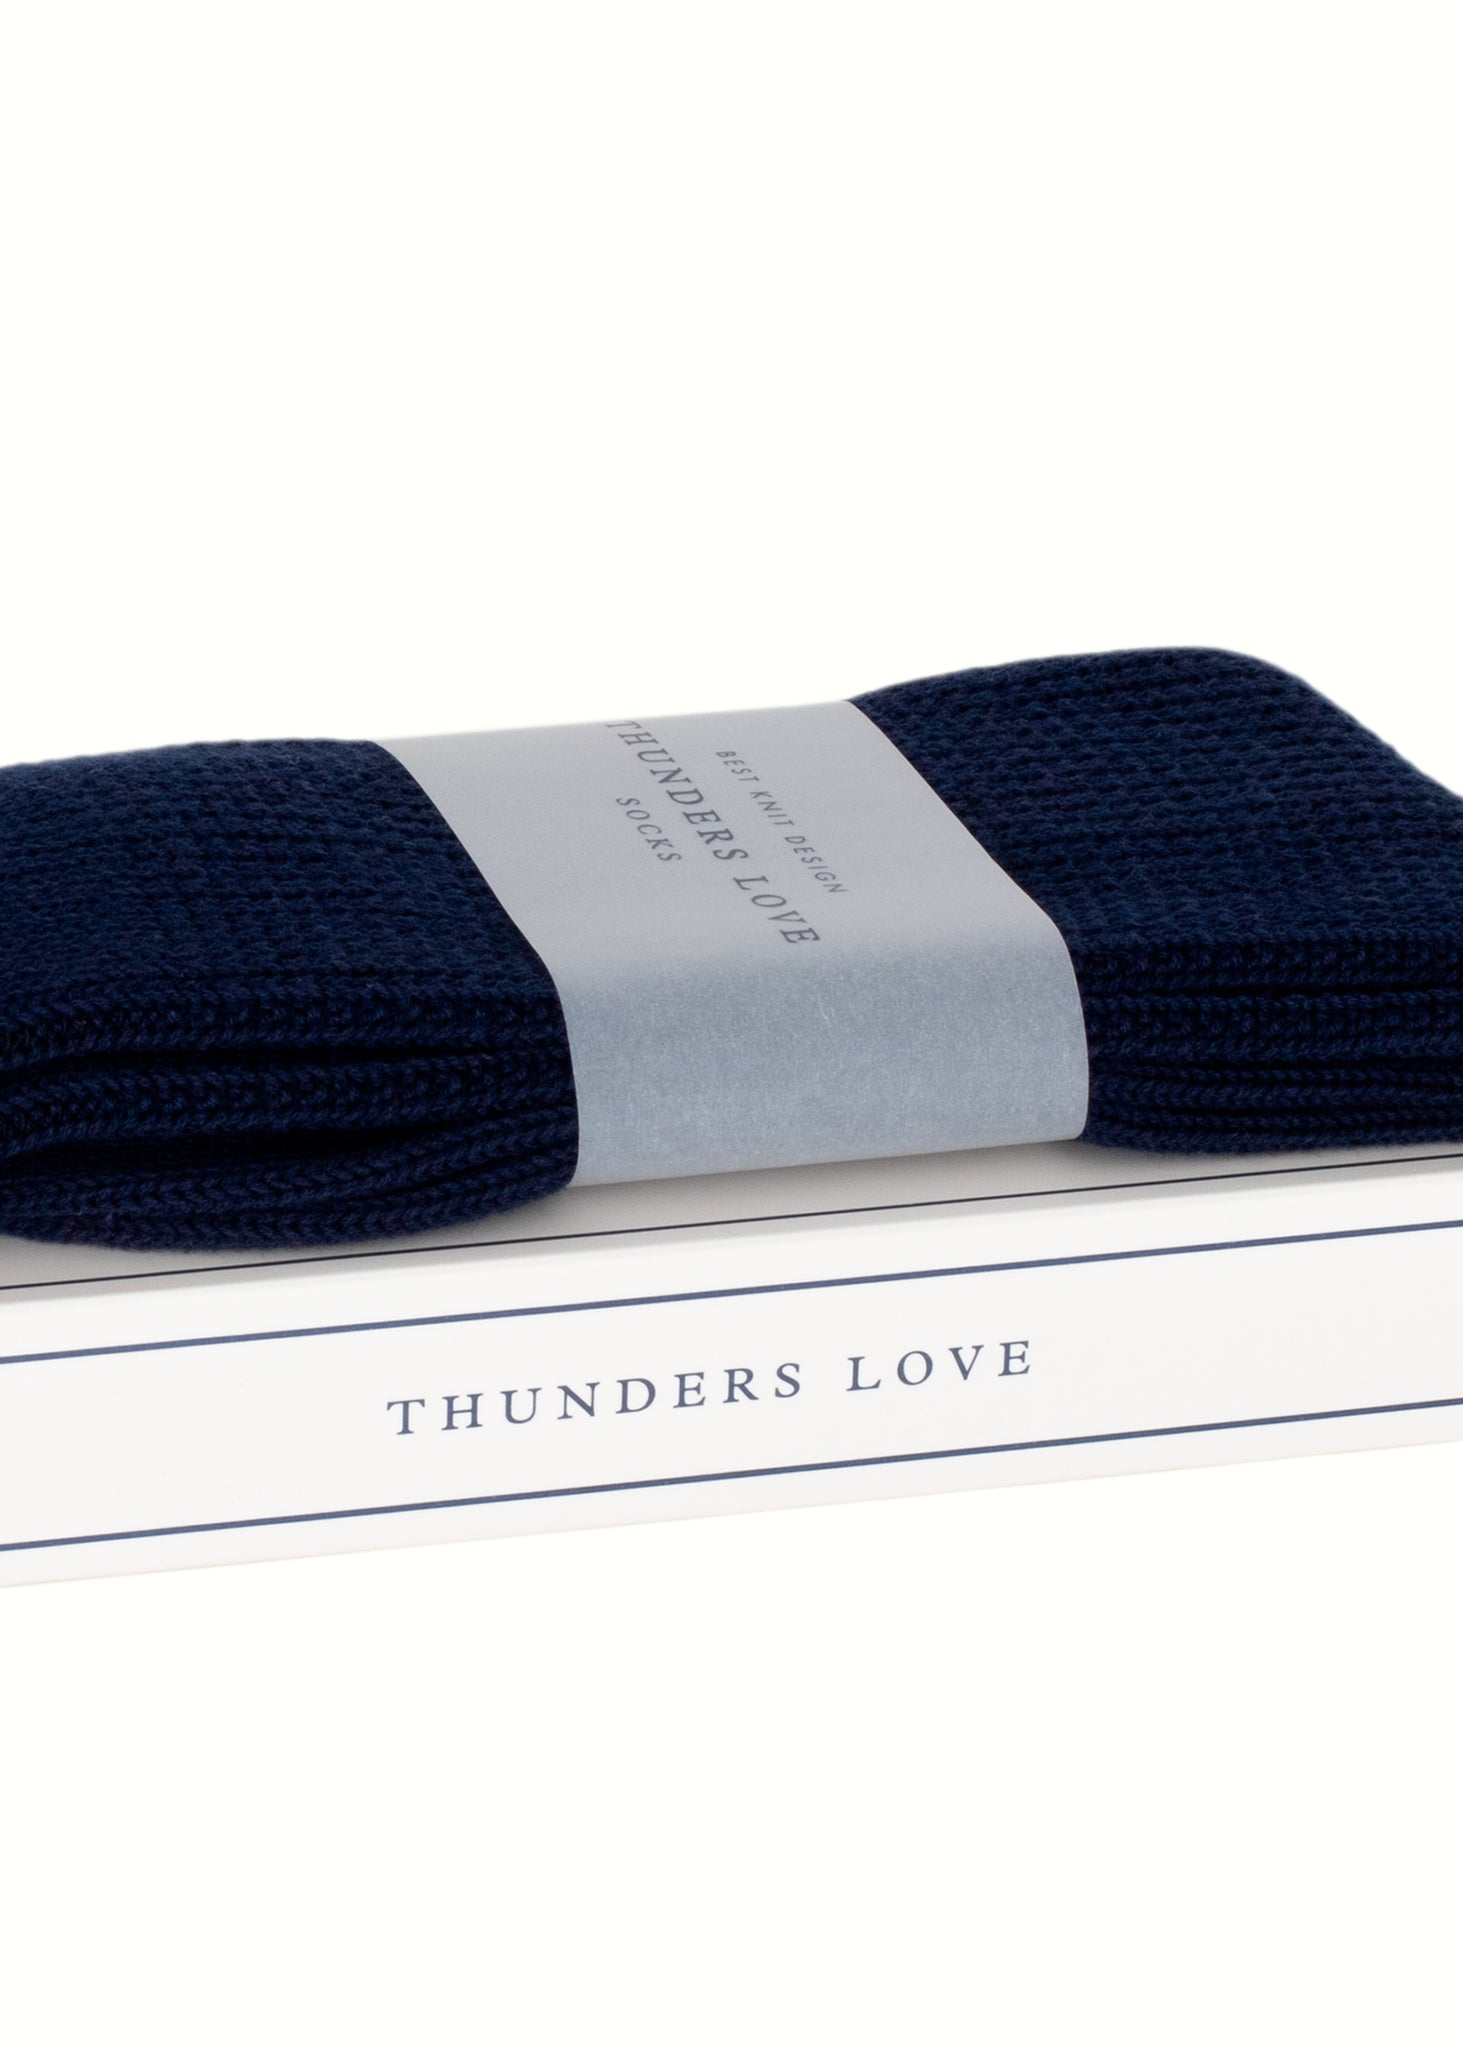 Thunders Love Link Navy Socks